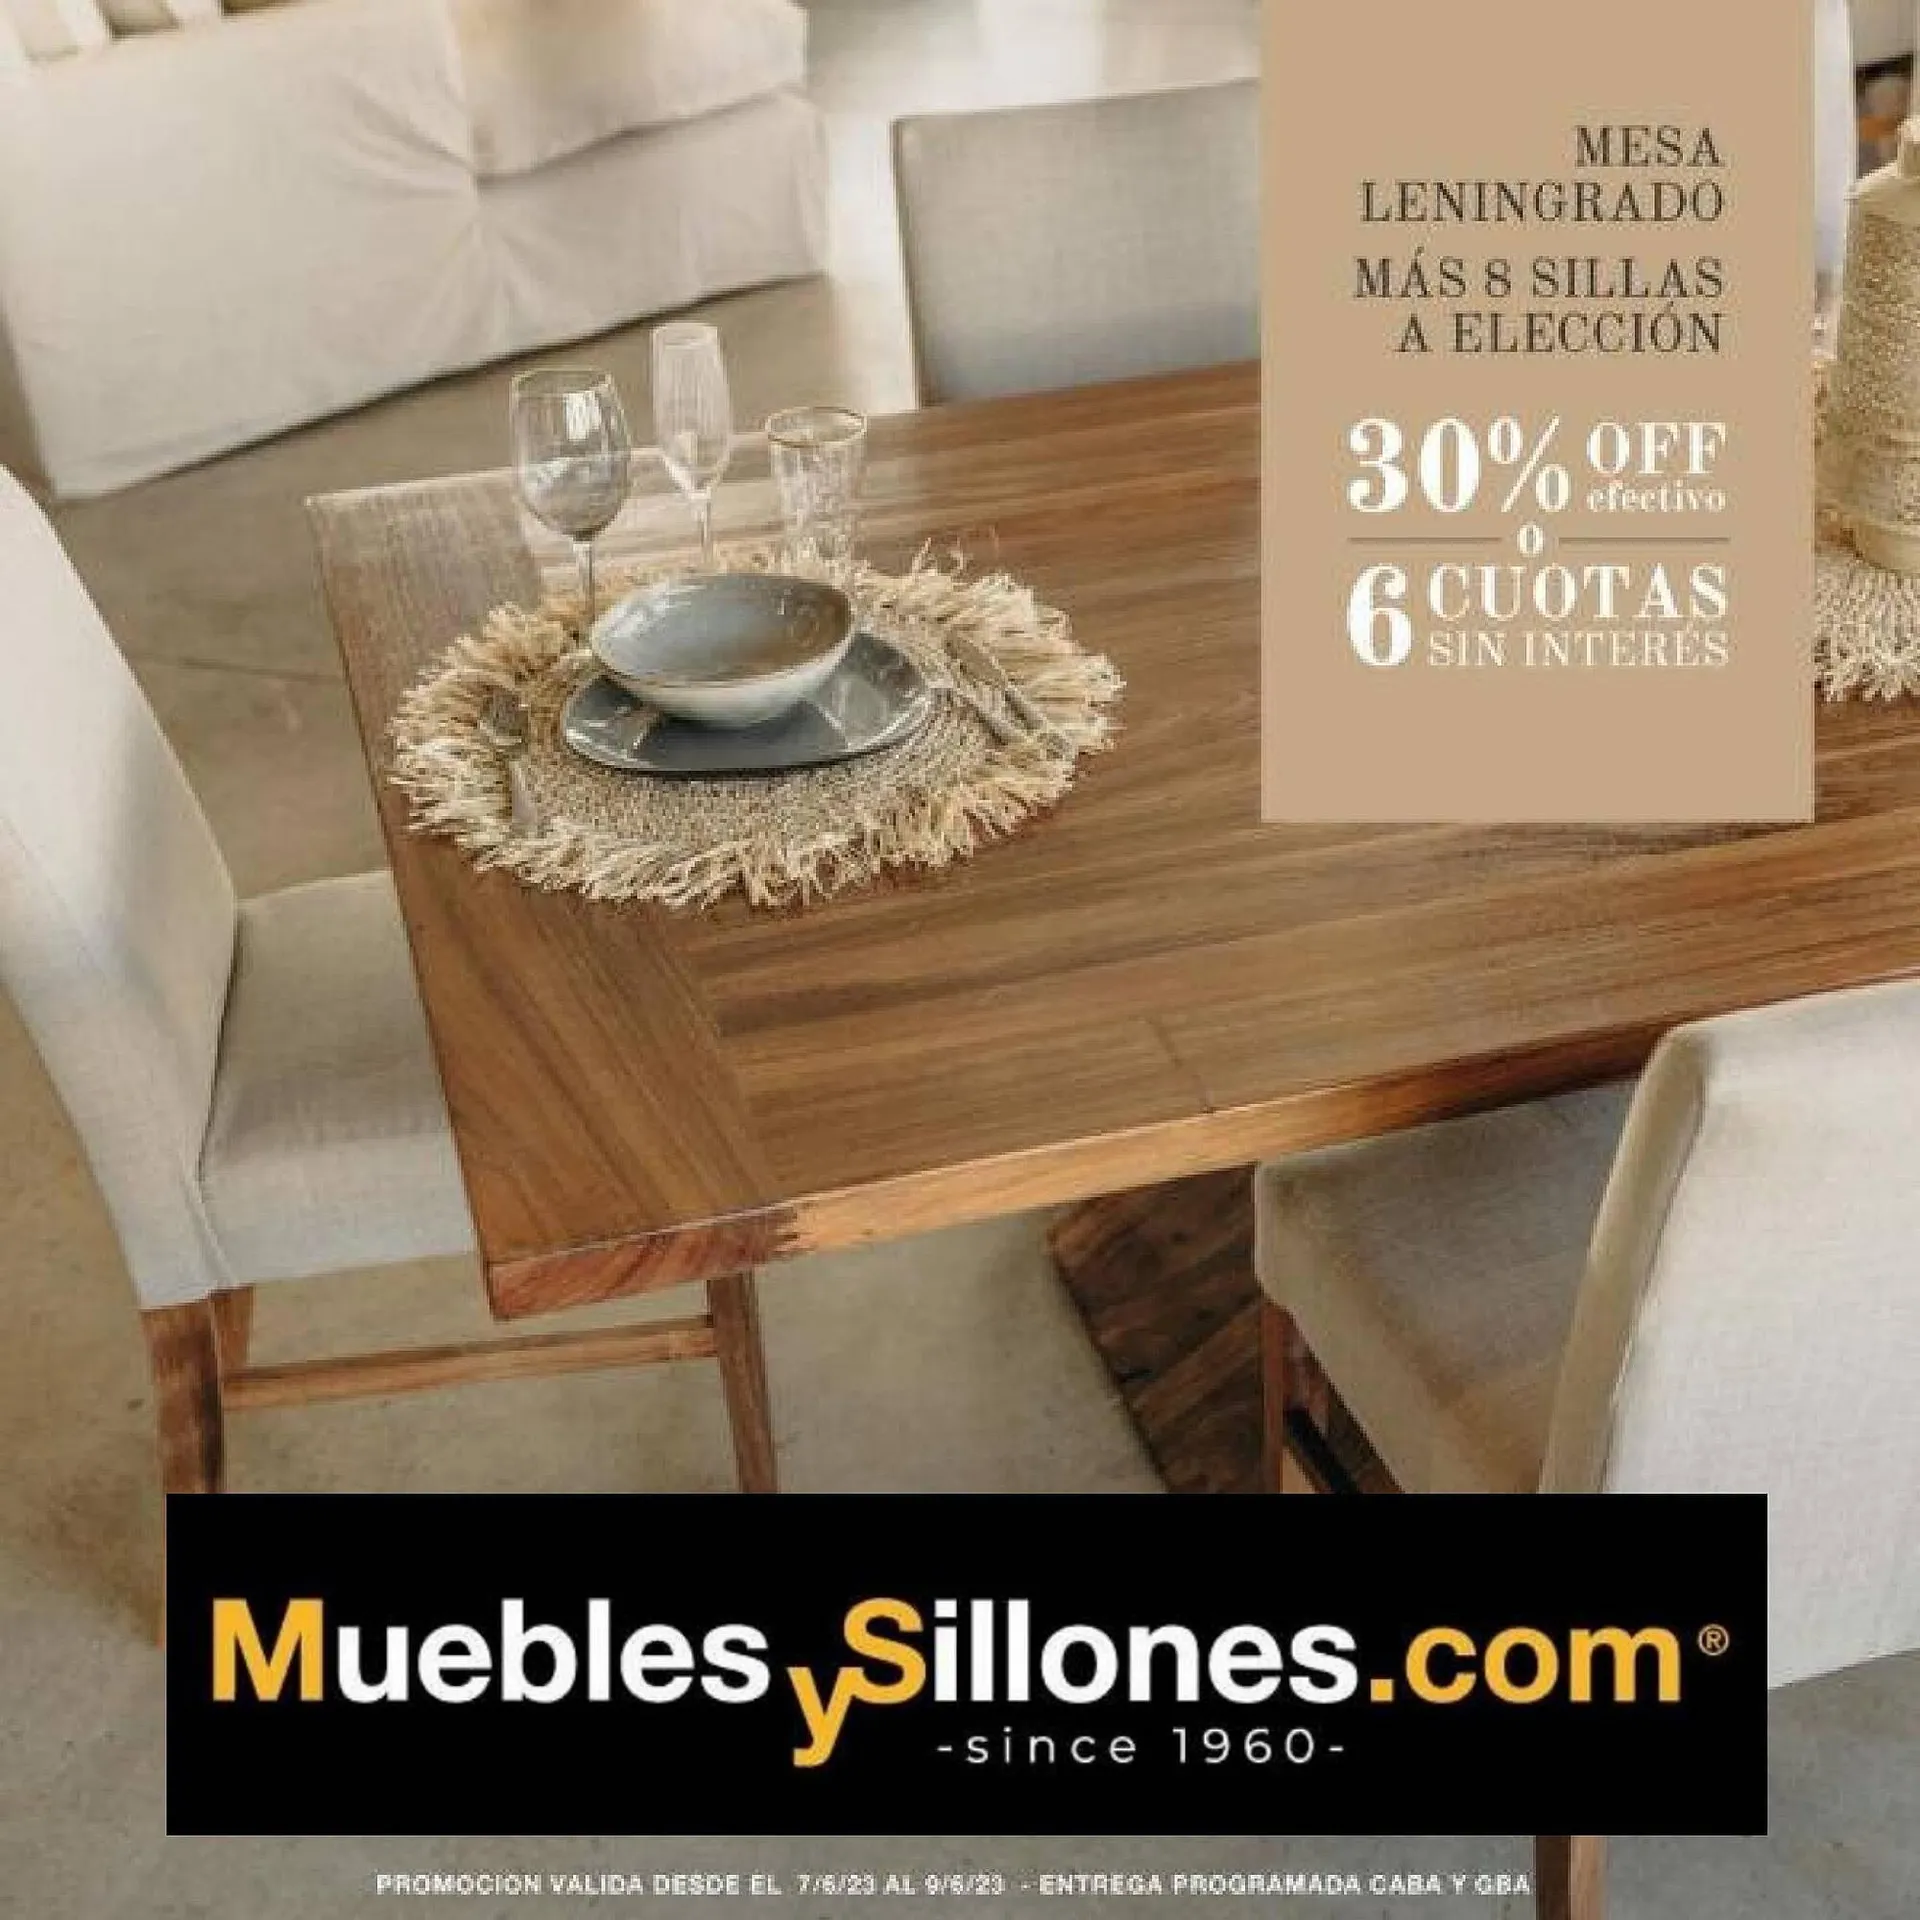 Catálogo Muebles y Sillones.com - 1